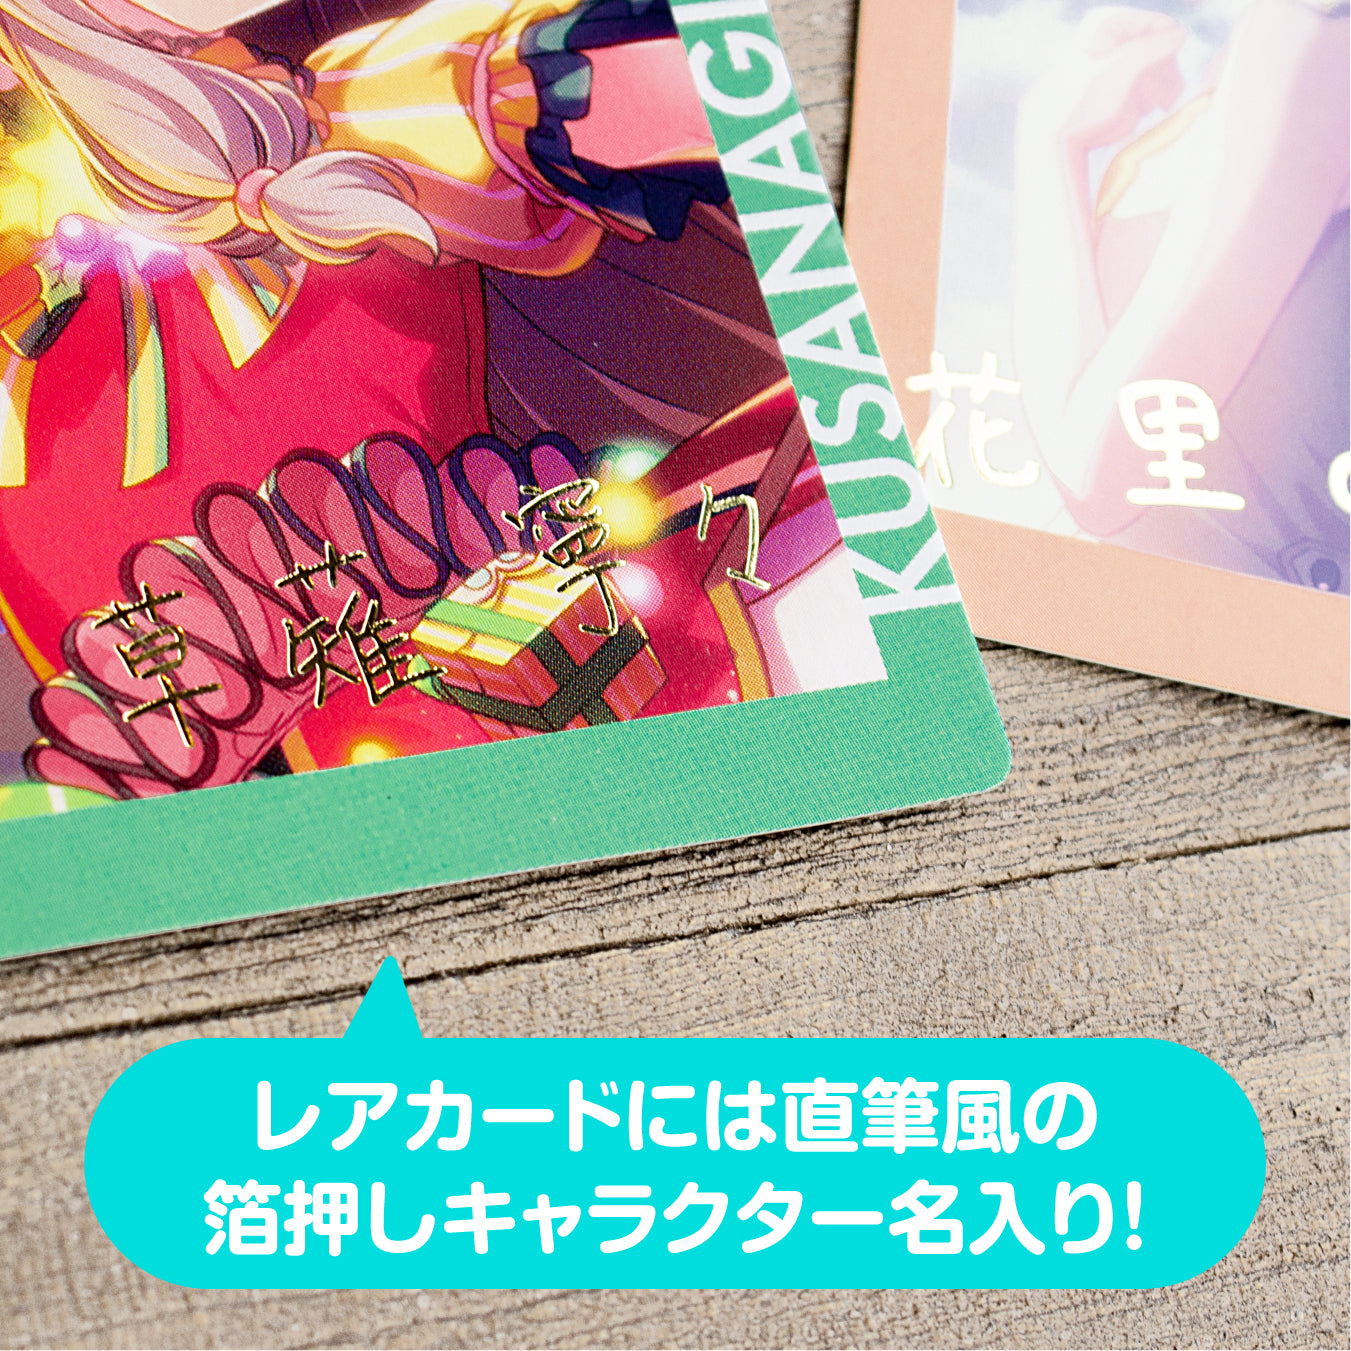 【予約商品】ePick card series vol.3 A BOX 特典付き［鳳 えむ］